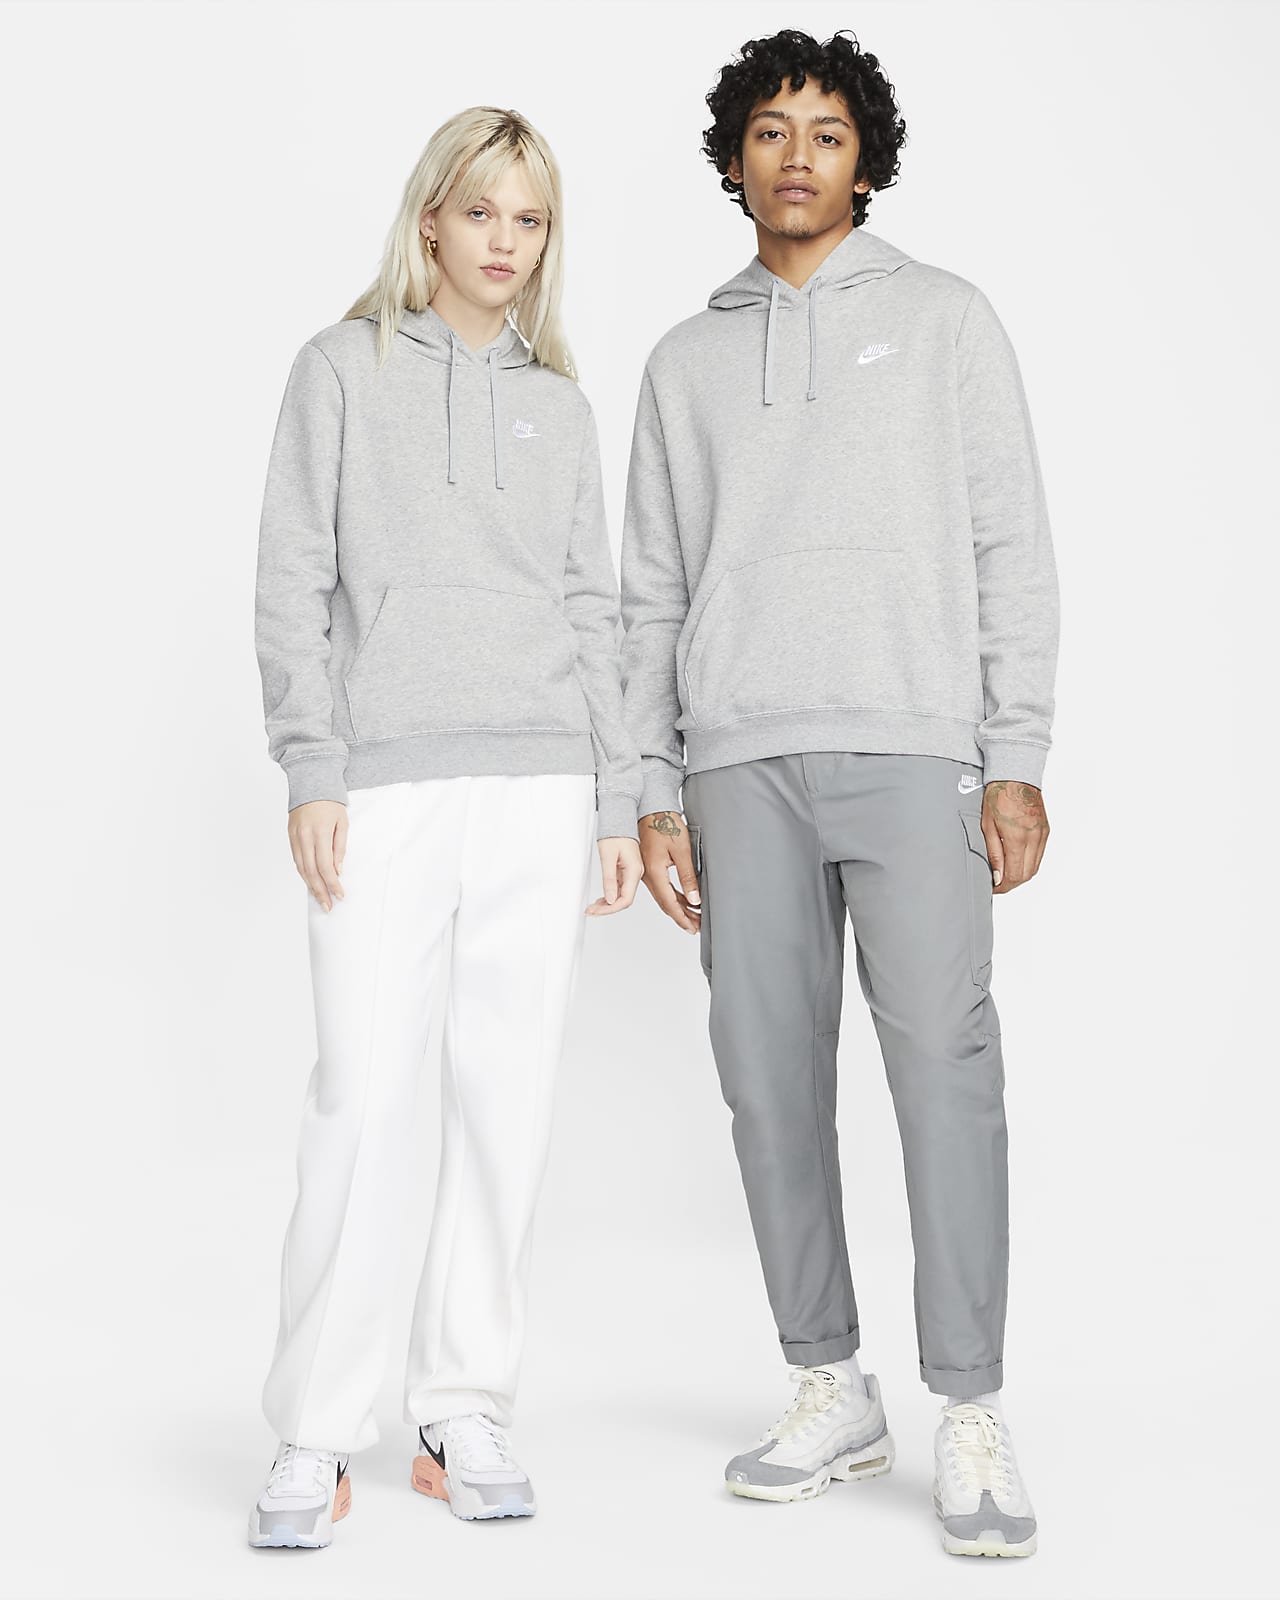 Nike Women's Sportswear Club Fleece Pullover Hoodie – Ernie's